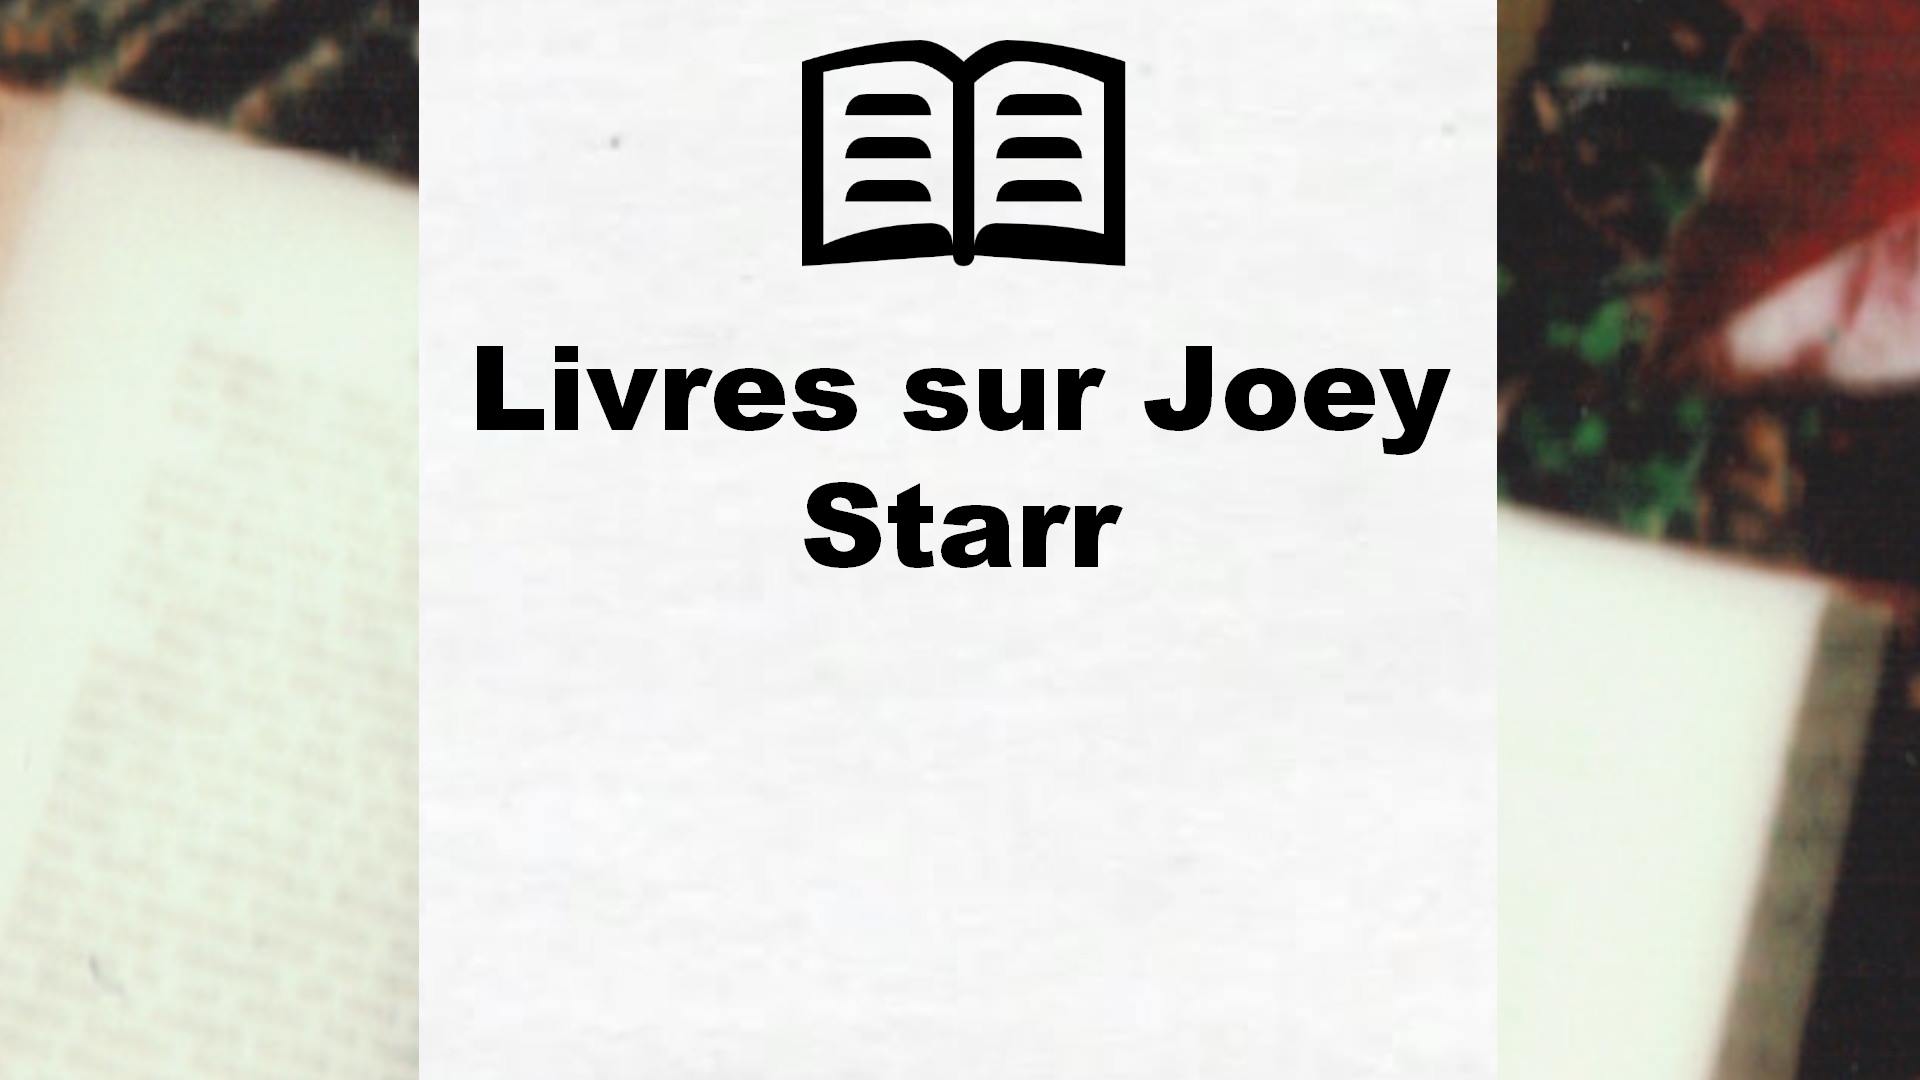 Livres sur Joey Starr